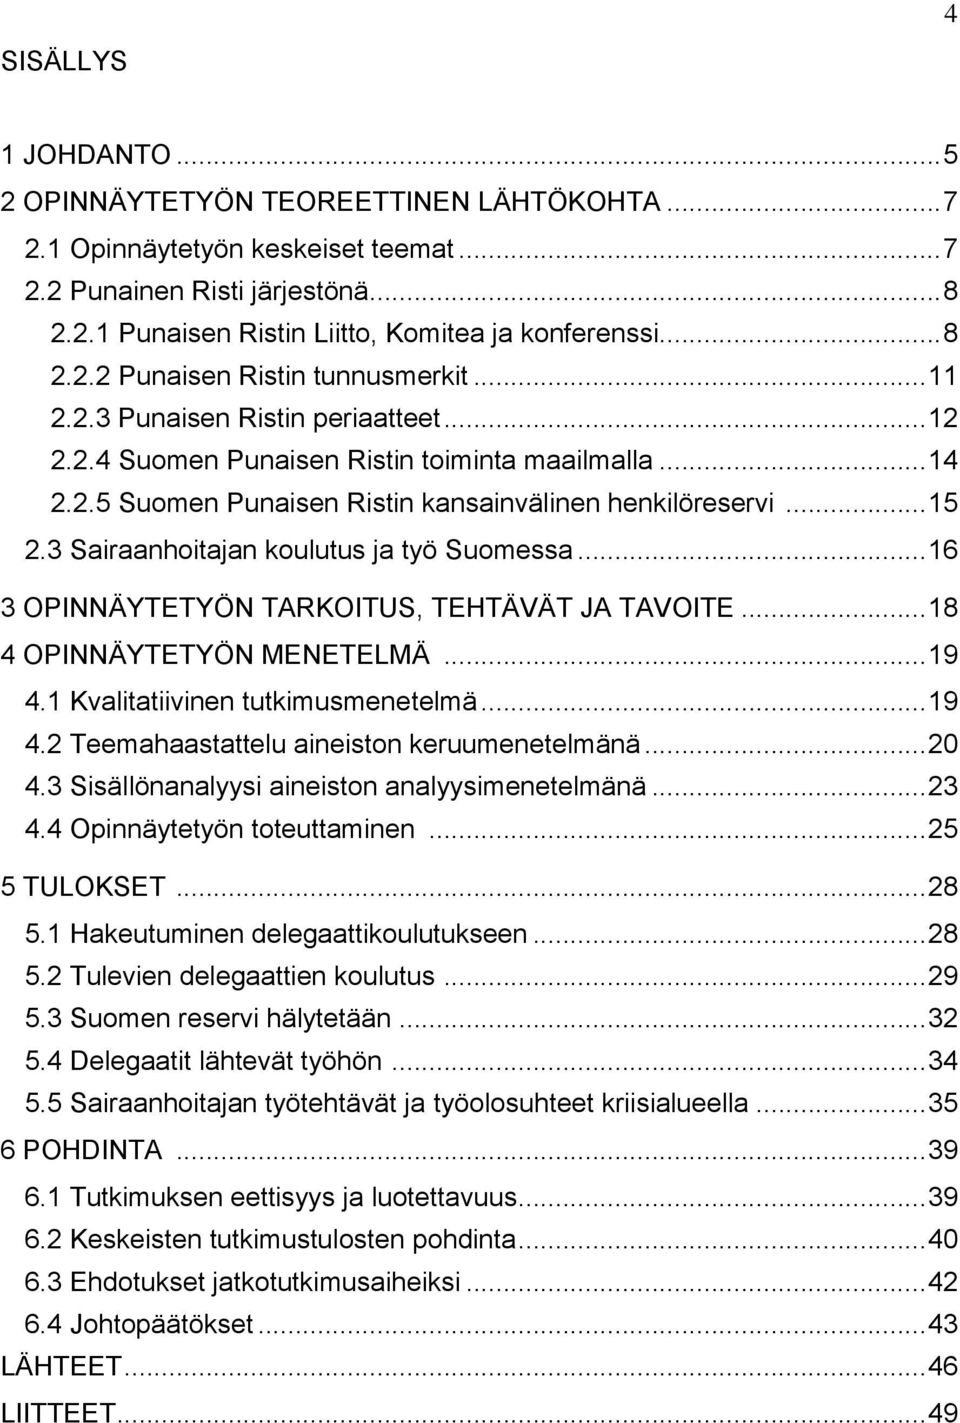 .. 15 2.3 Sairaanhoitajan koulutus ja työ Suomessa... 16 3 OPINNÄYTETYÖN TARKOITUS, TEHTÄVÄT JA TAVOITE... 18 4 OPINNÄYTETYÖN MENETELMÄ... 19 4.1 Kvalitatiivinen tutkimusmenetelmä... 19 4.2 Teemahaastattelu aineiston keruumenetelmänä.